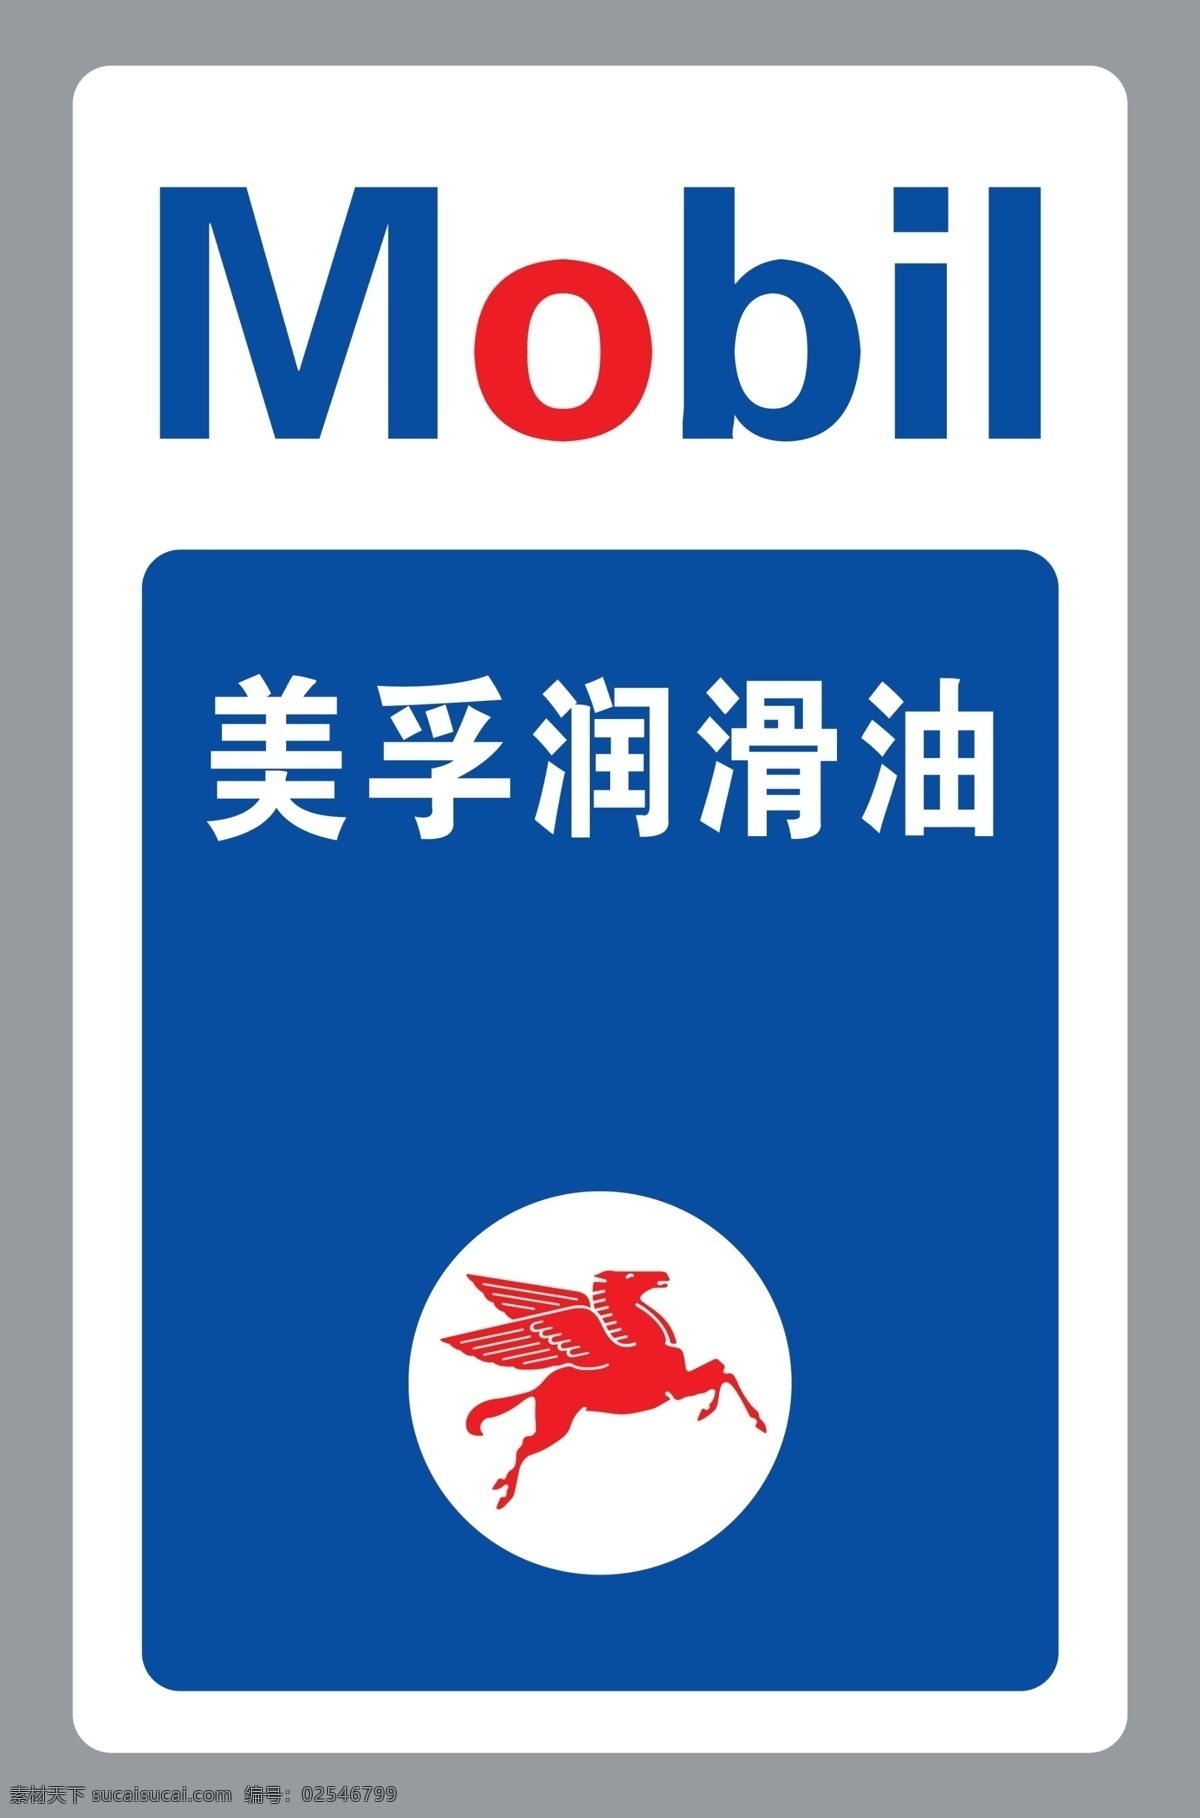 美孚润滑油 mobil 美孚logo 飞马标志 润滑油牌子 美孚标牌 分层 蓝色